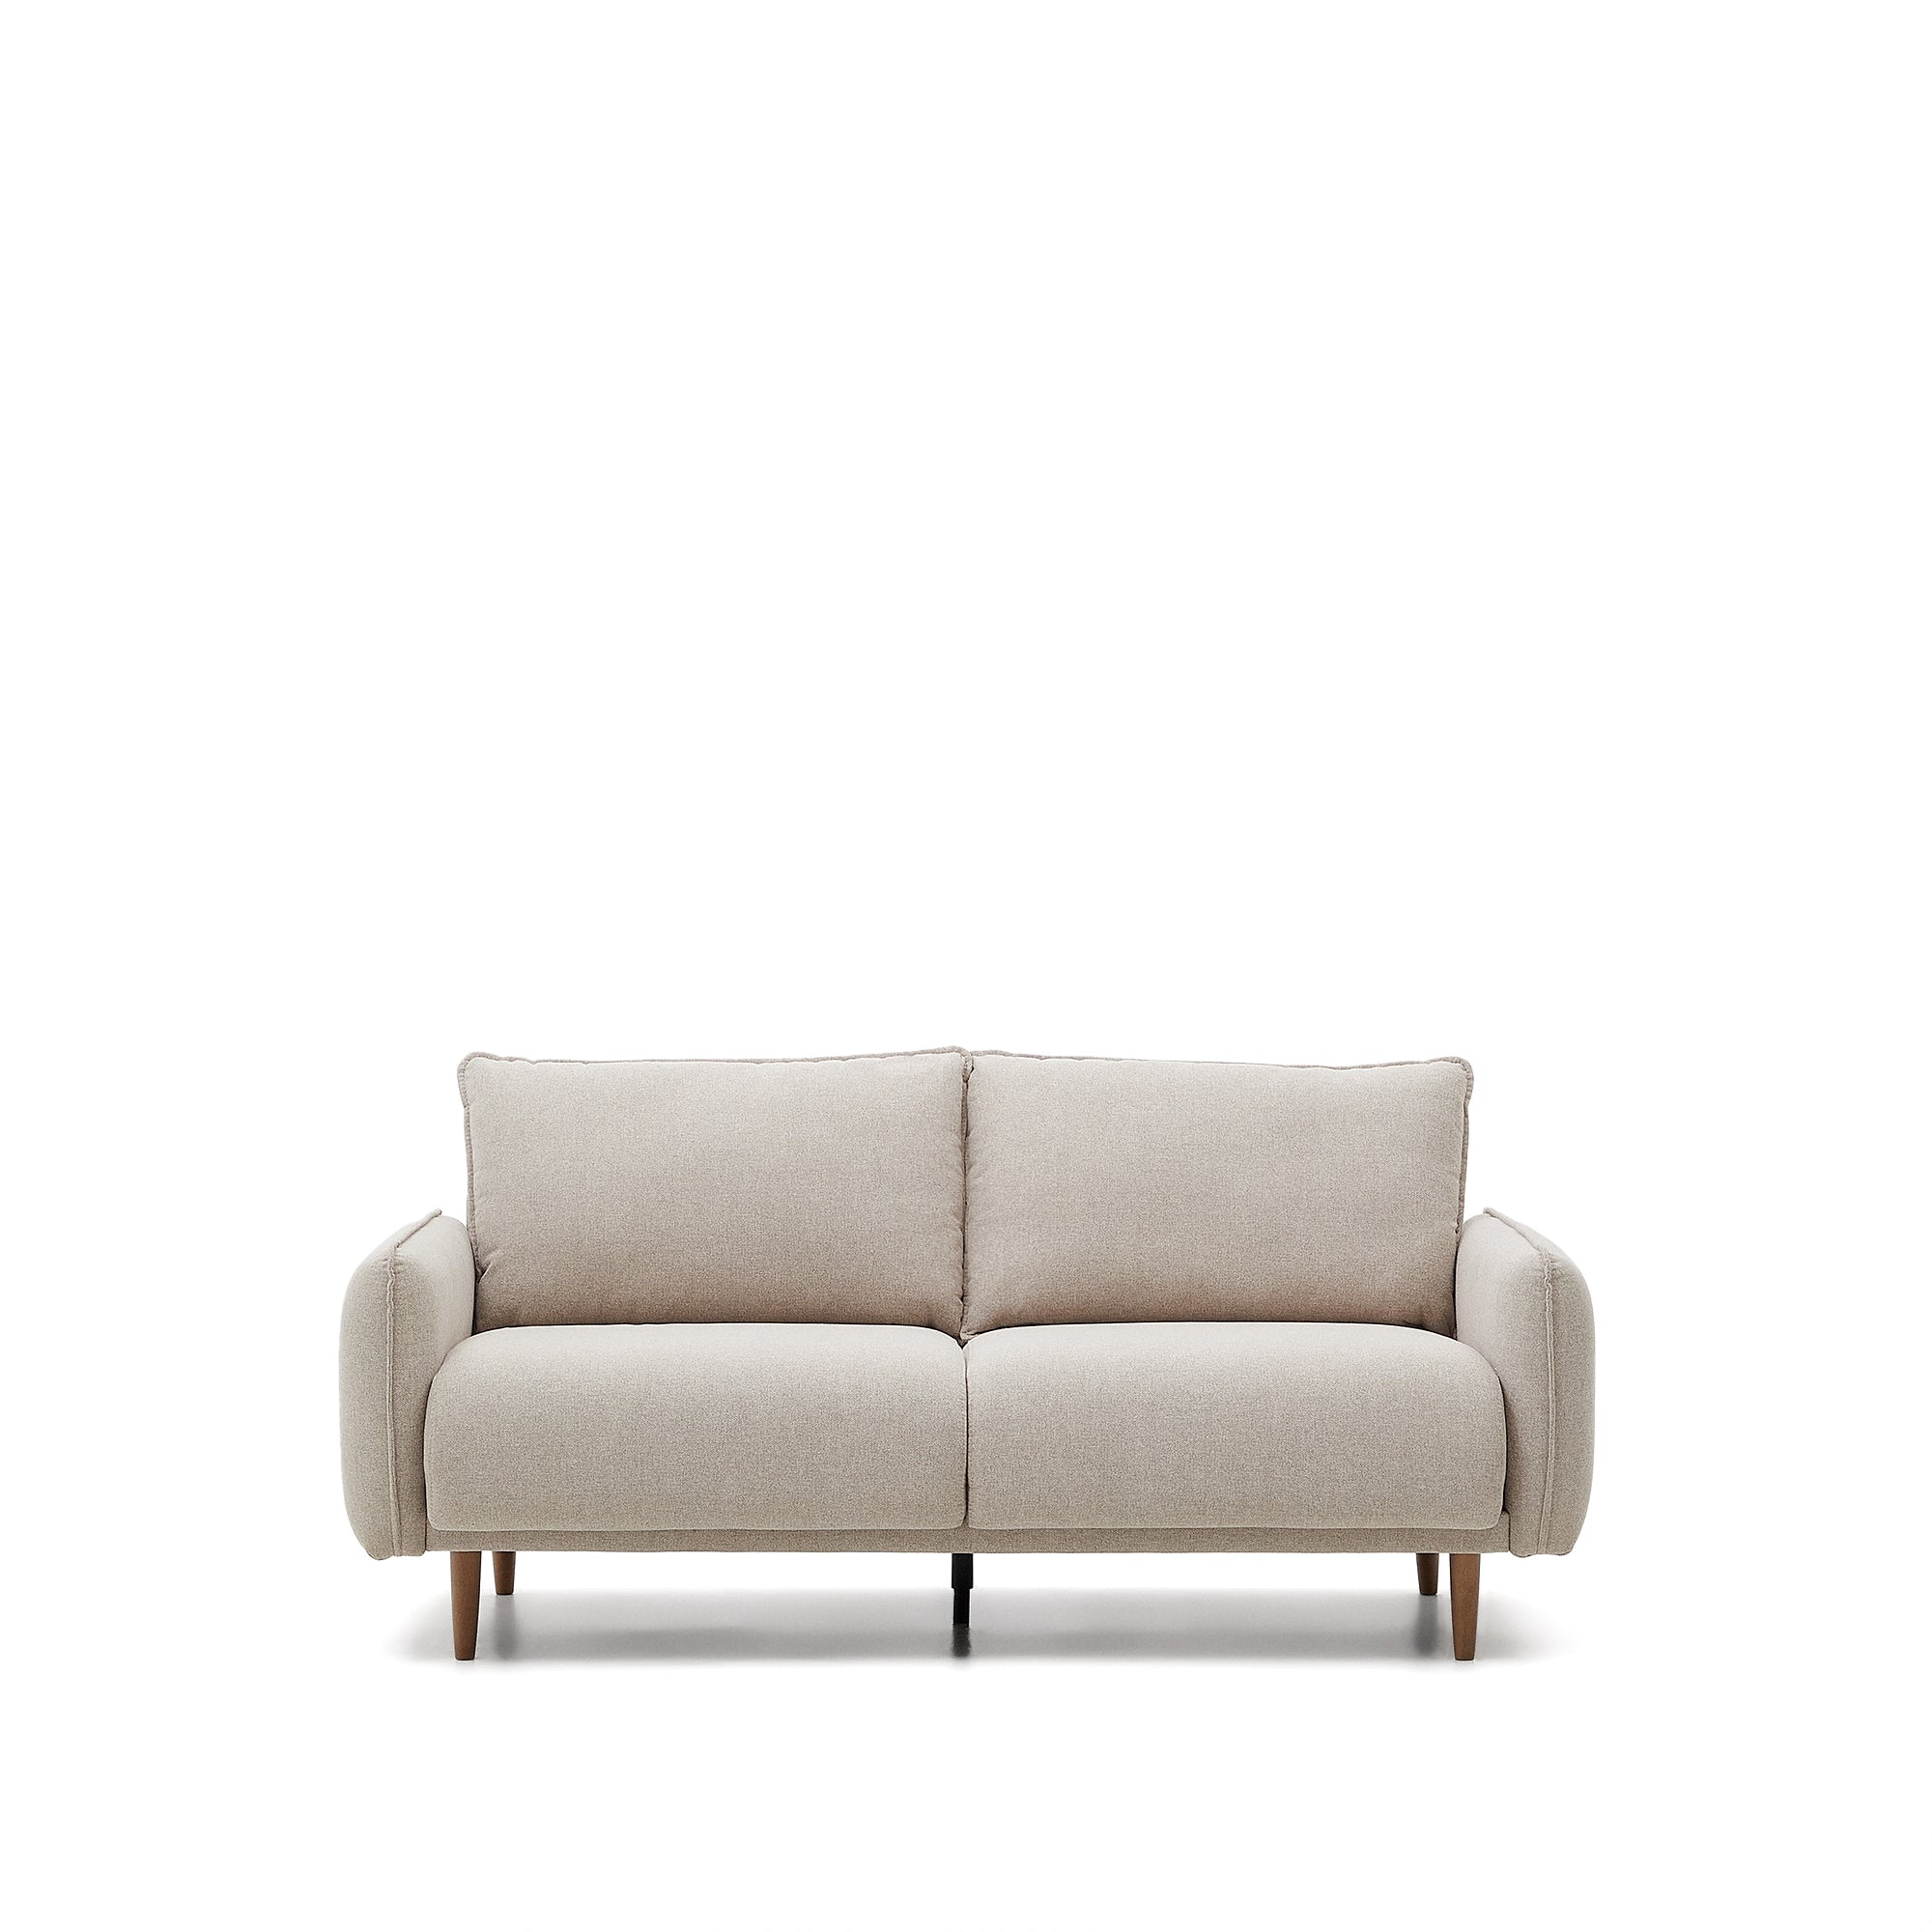 Carlota kétszemélyes kanapé bézs színben, 184 cm